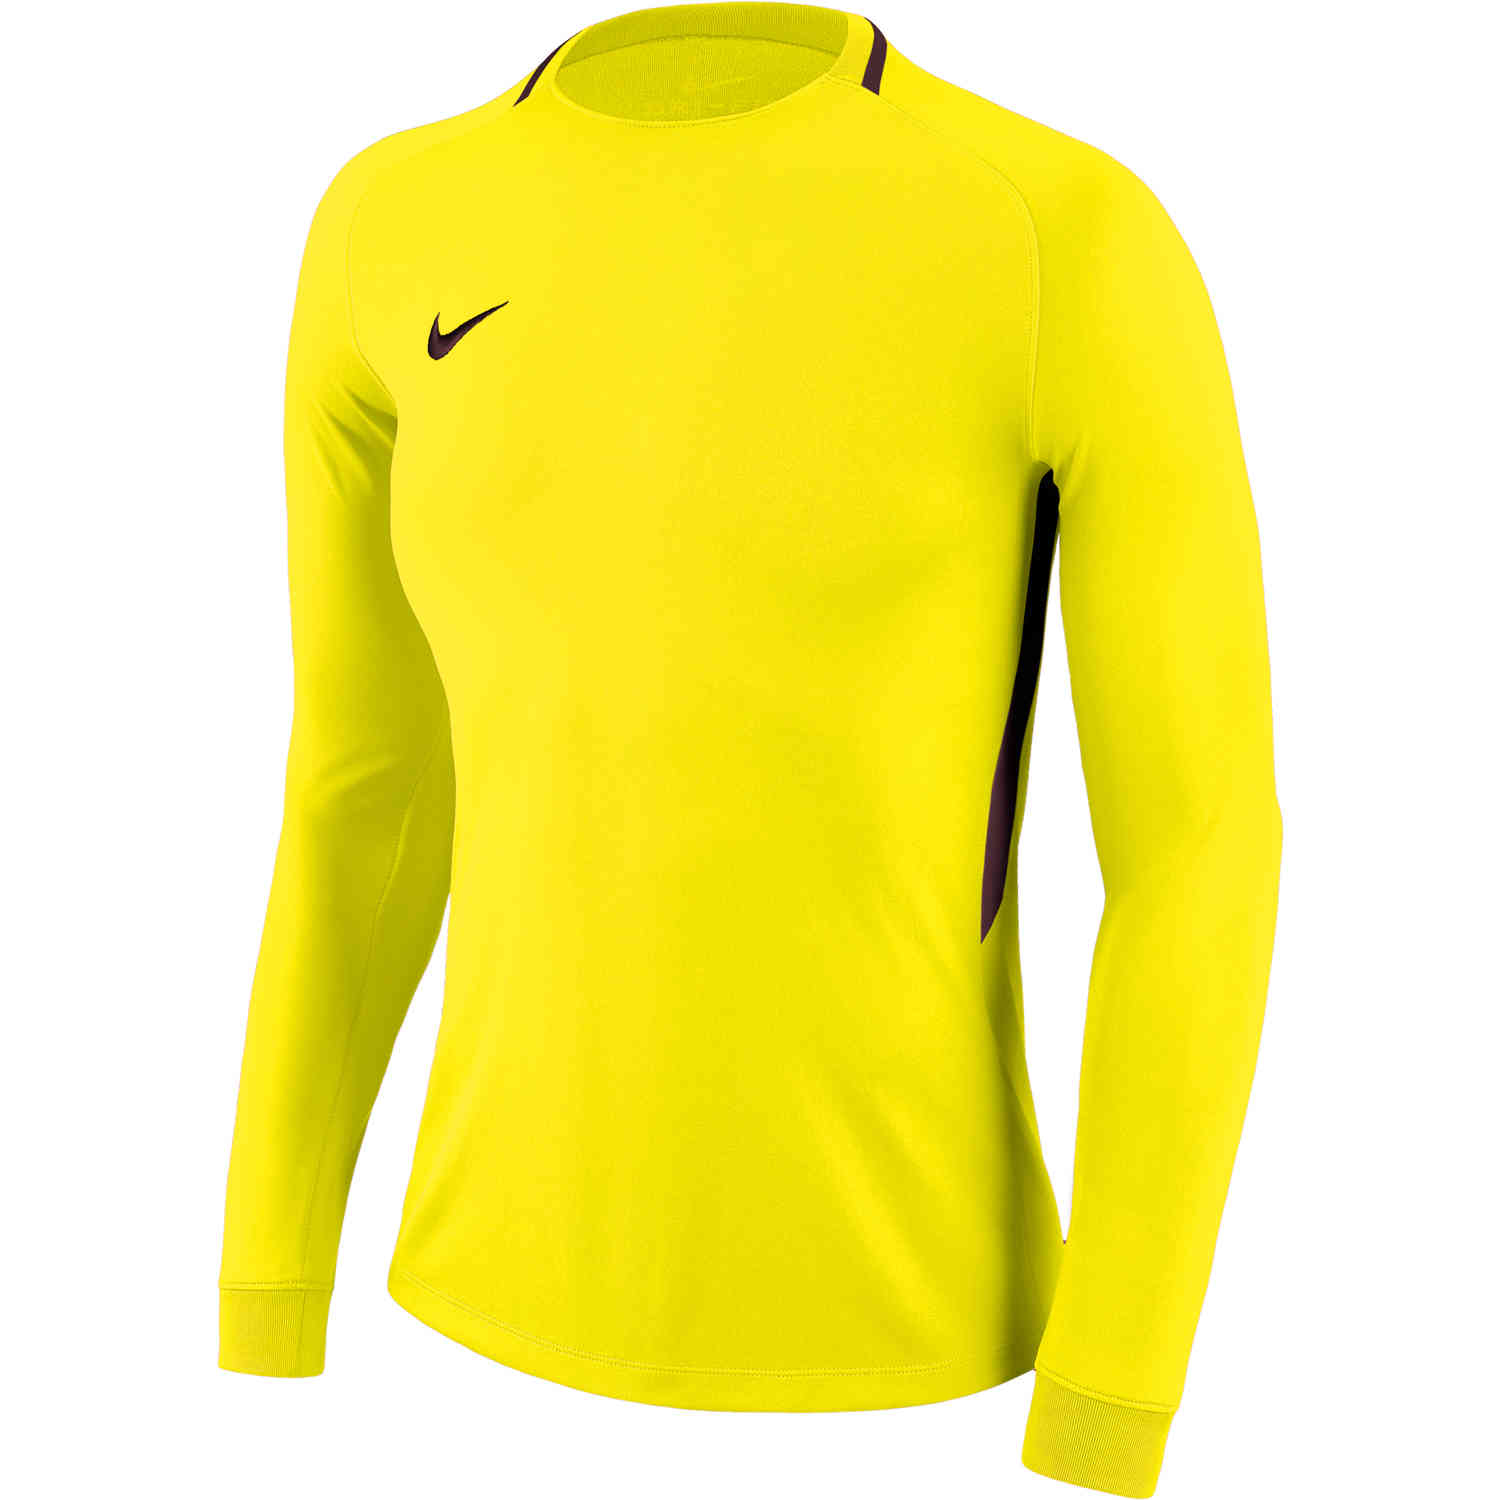 adidas women's goalkeeper jersey